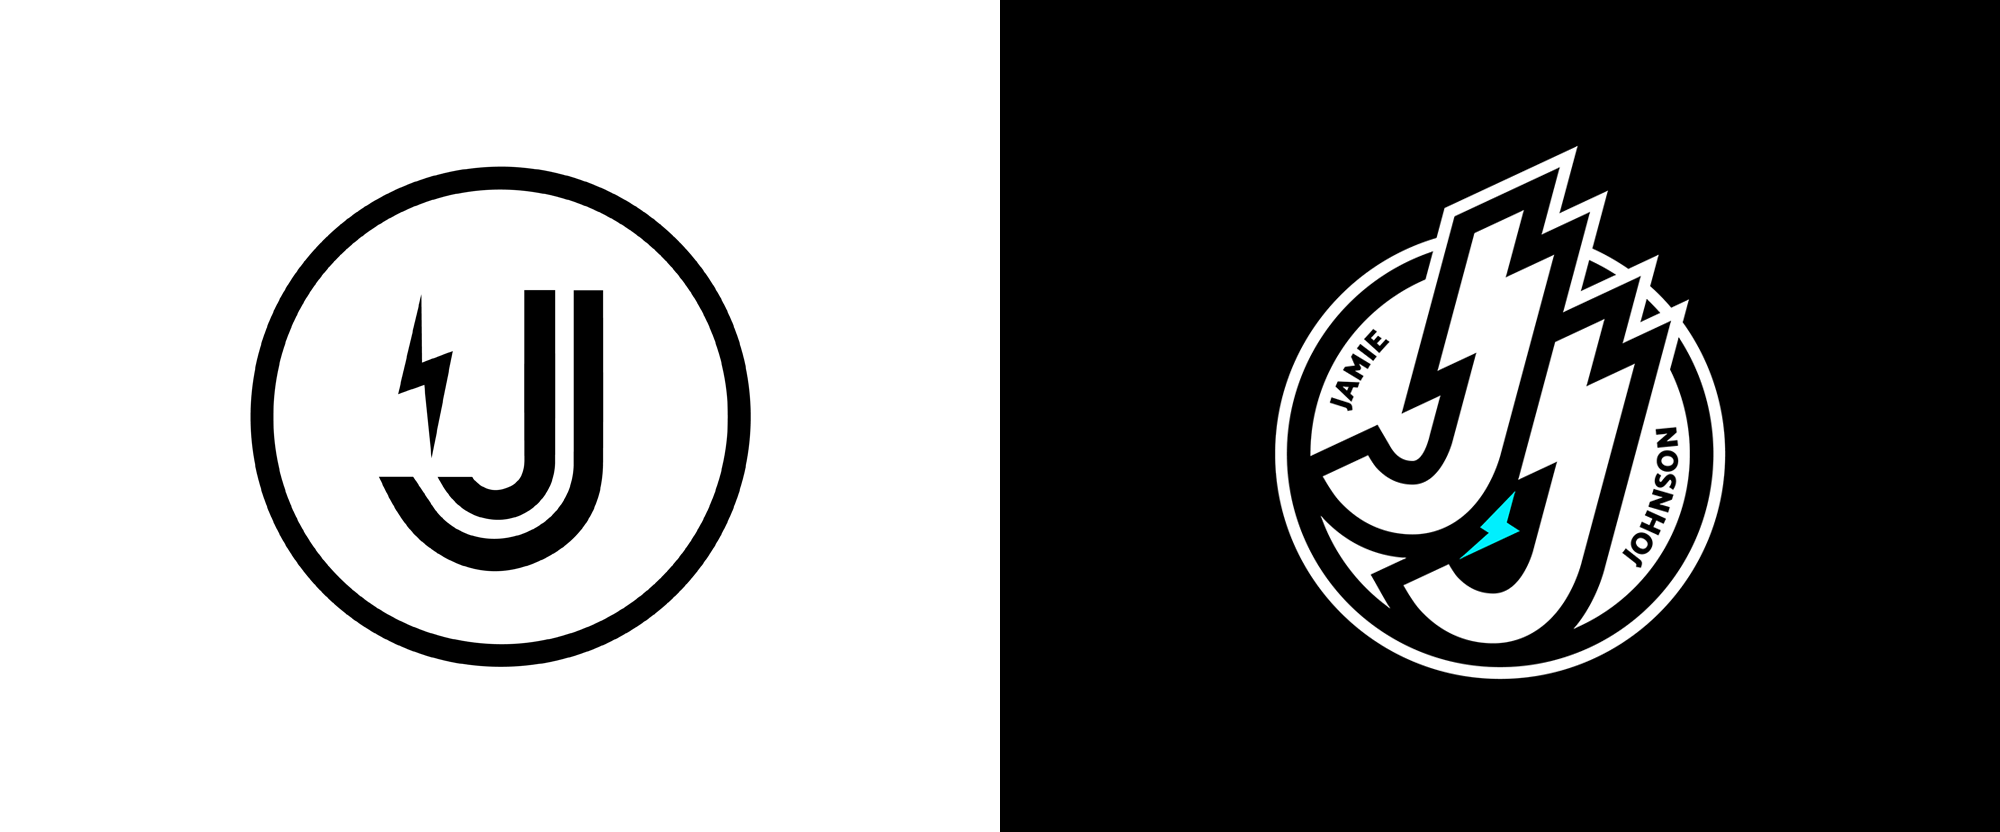 New Logo and Identity for <em>Jamie Johnson</em> by Nomad Studio